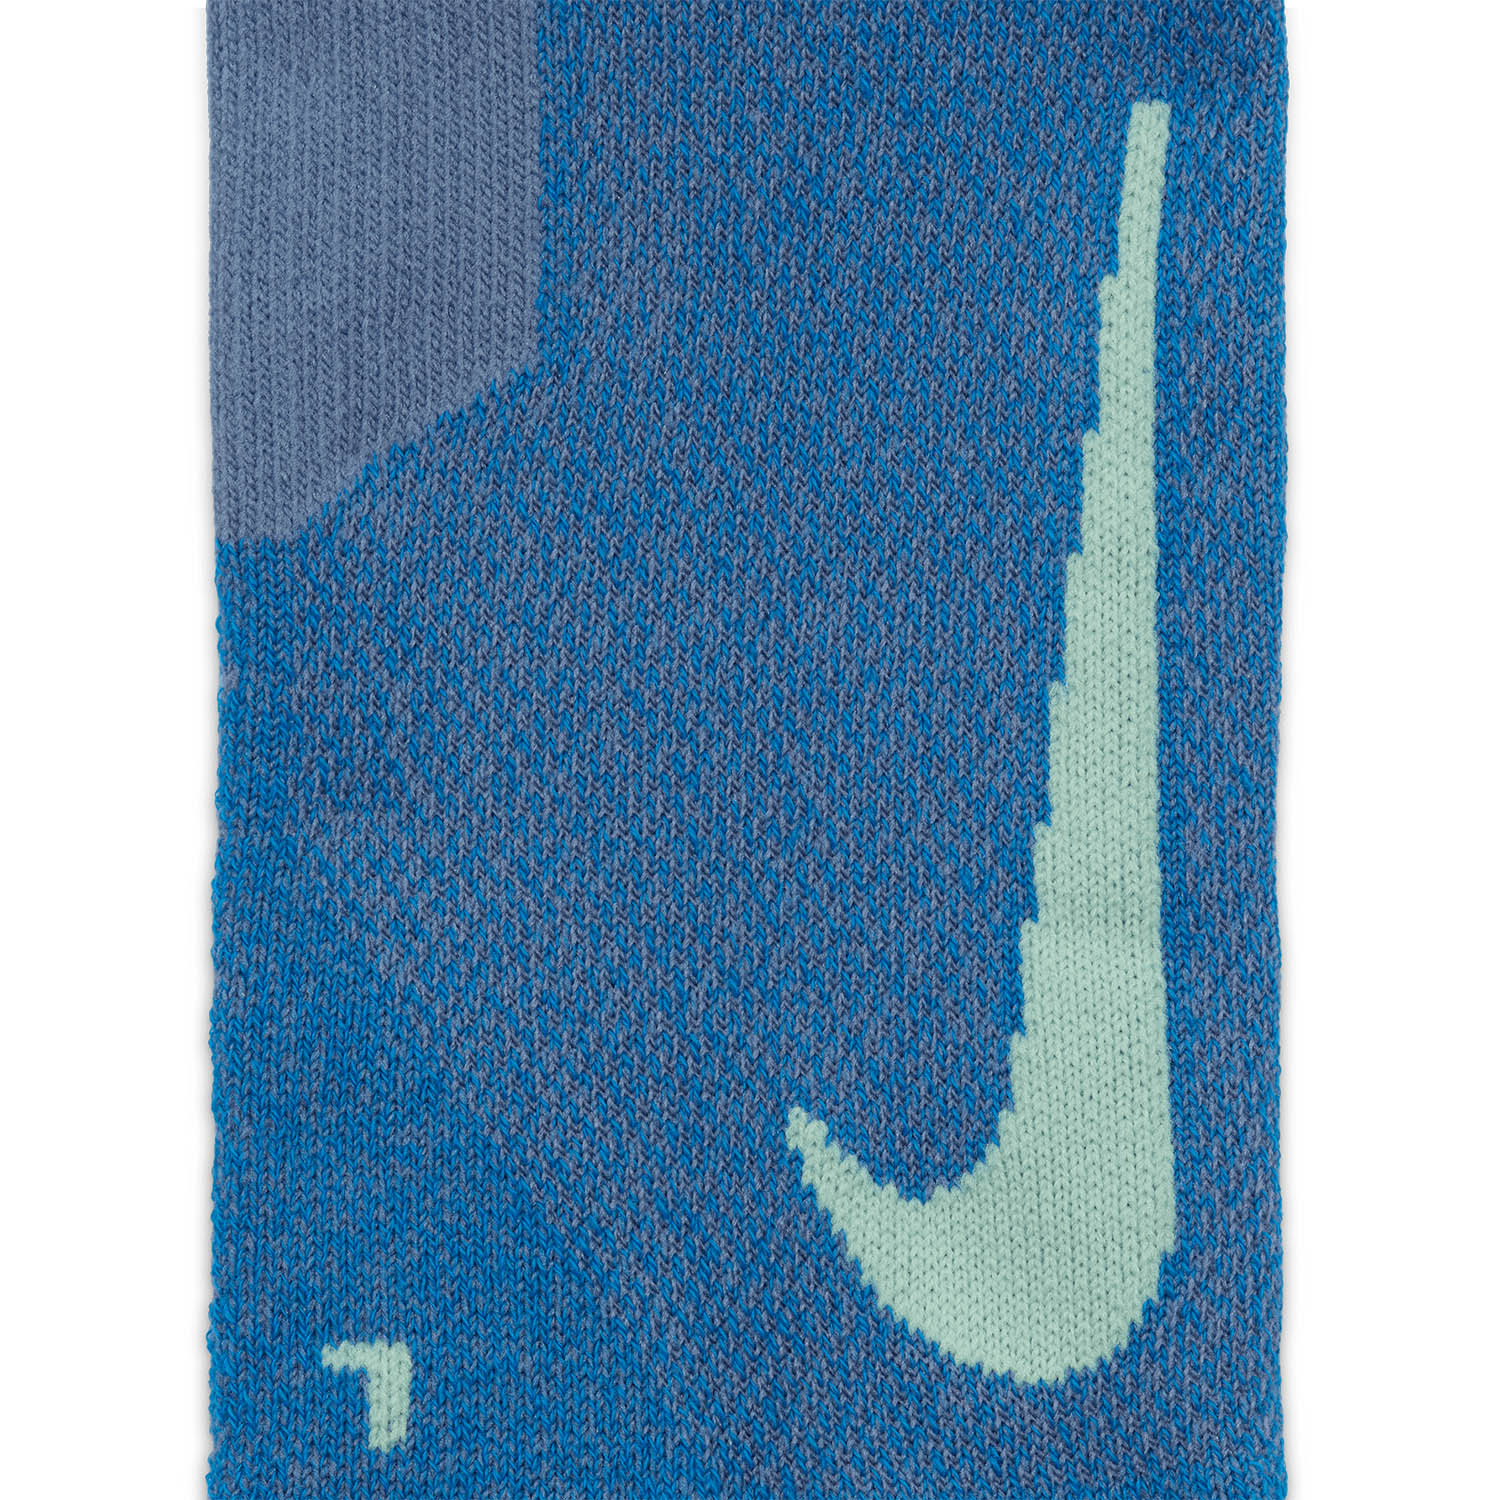 Nike Multiplier x 2 Socks - Light Blue/Fluo Green